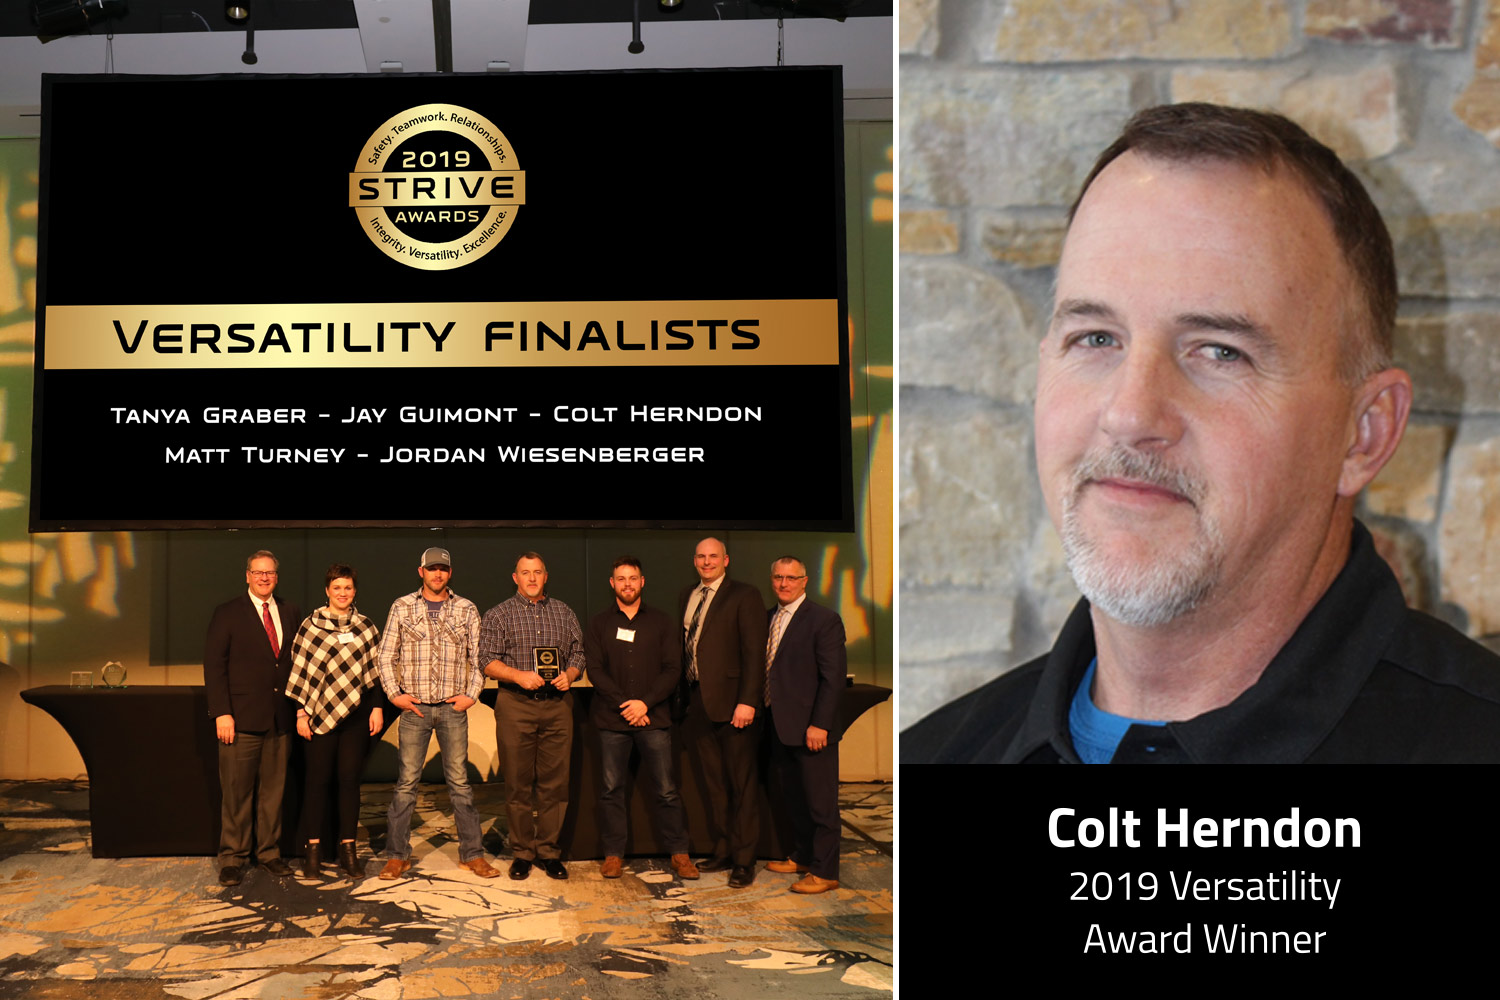 Colt Herndon, 2019 Versatility Award Winner